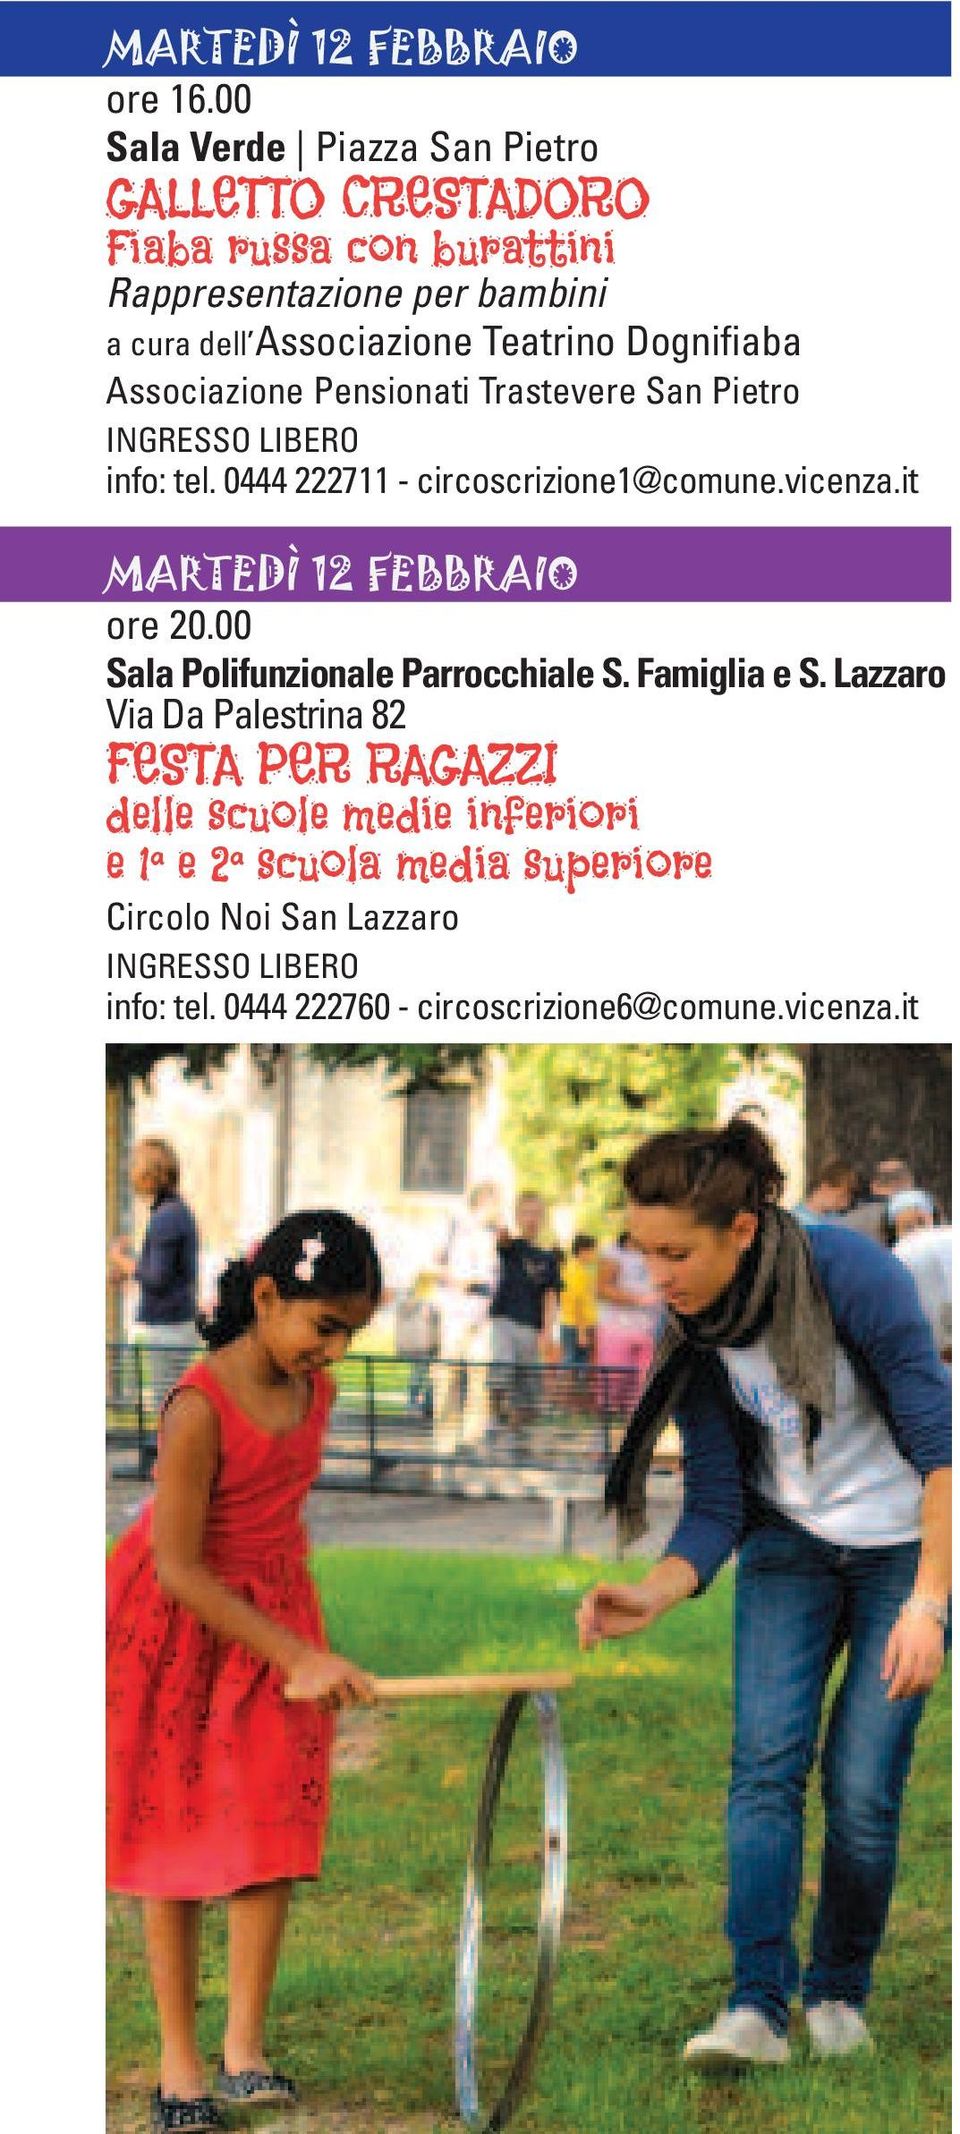 Teatrino Dognifiaba Associazione Pensionati Trastevere San Pietro info: tel. 0444 222711 - circoscrizione1@comune.vicenza.